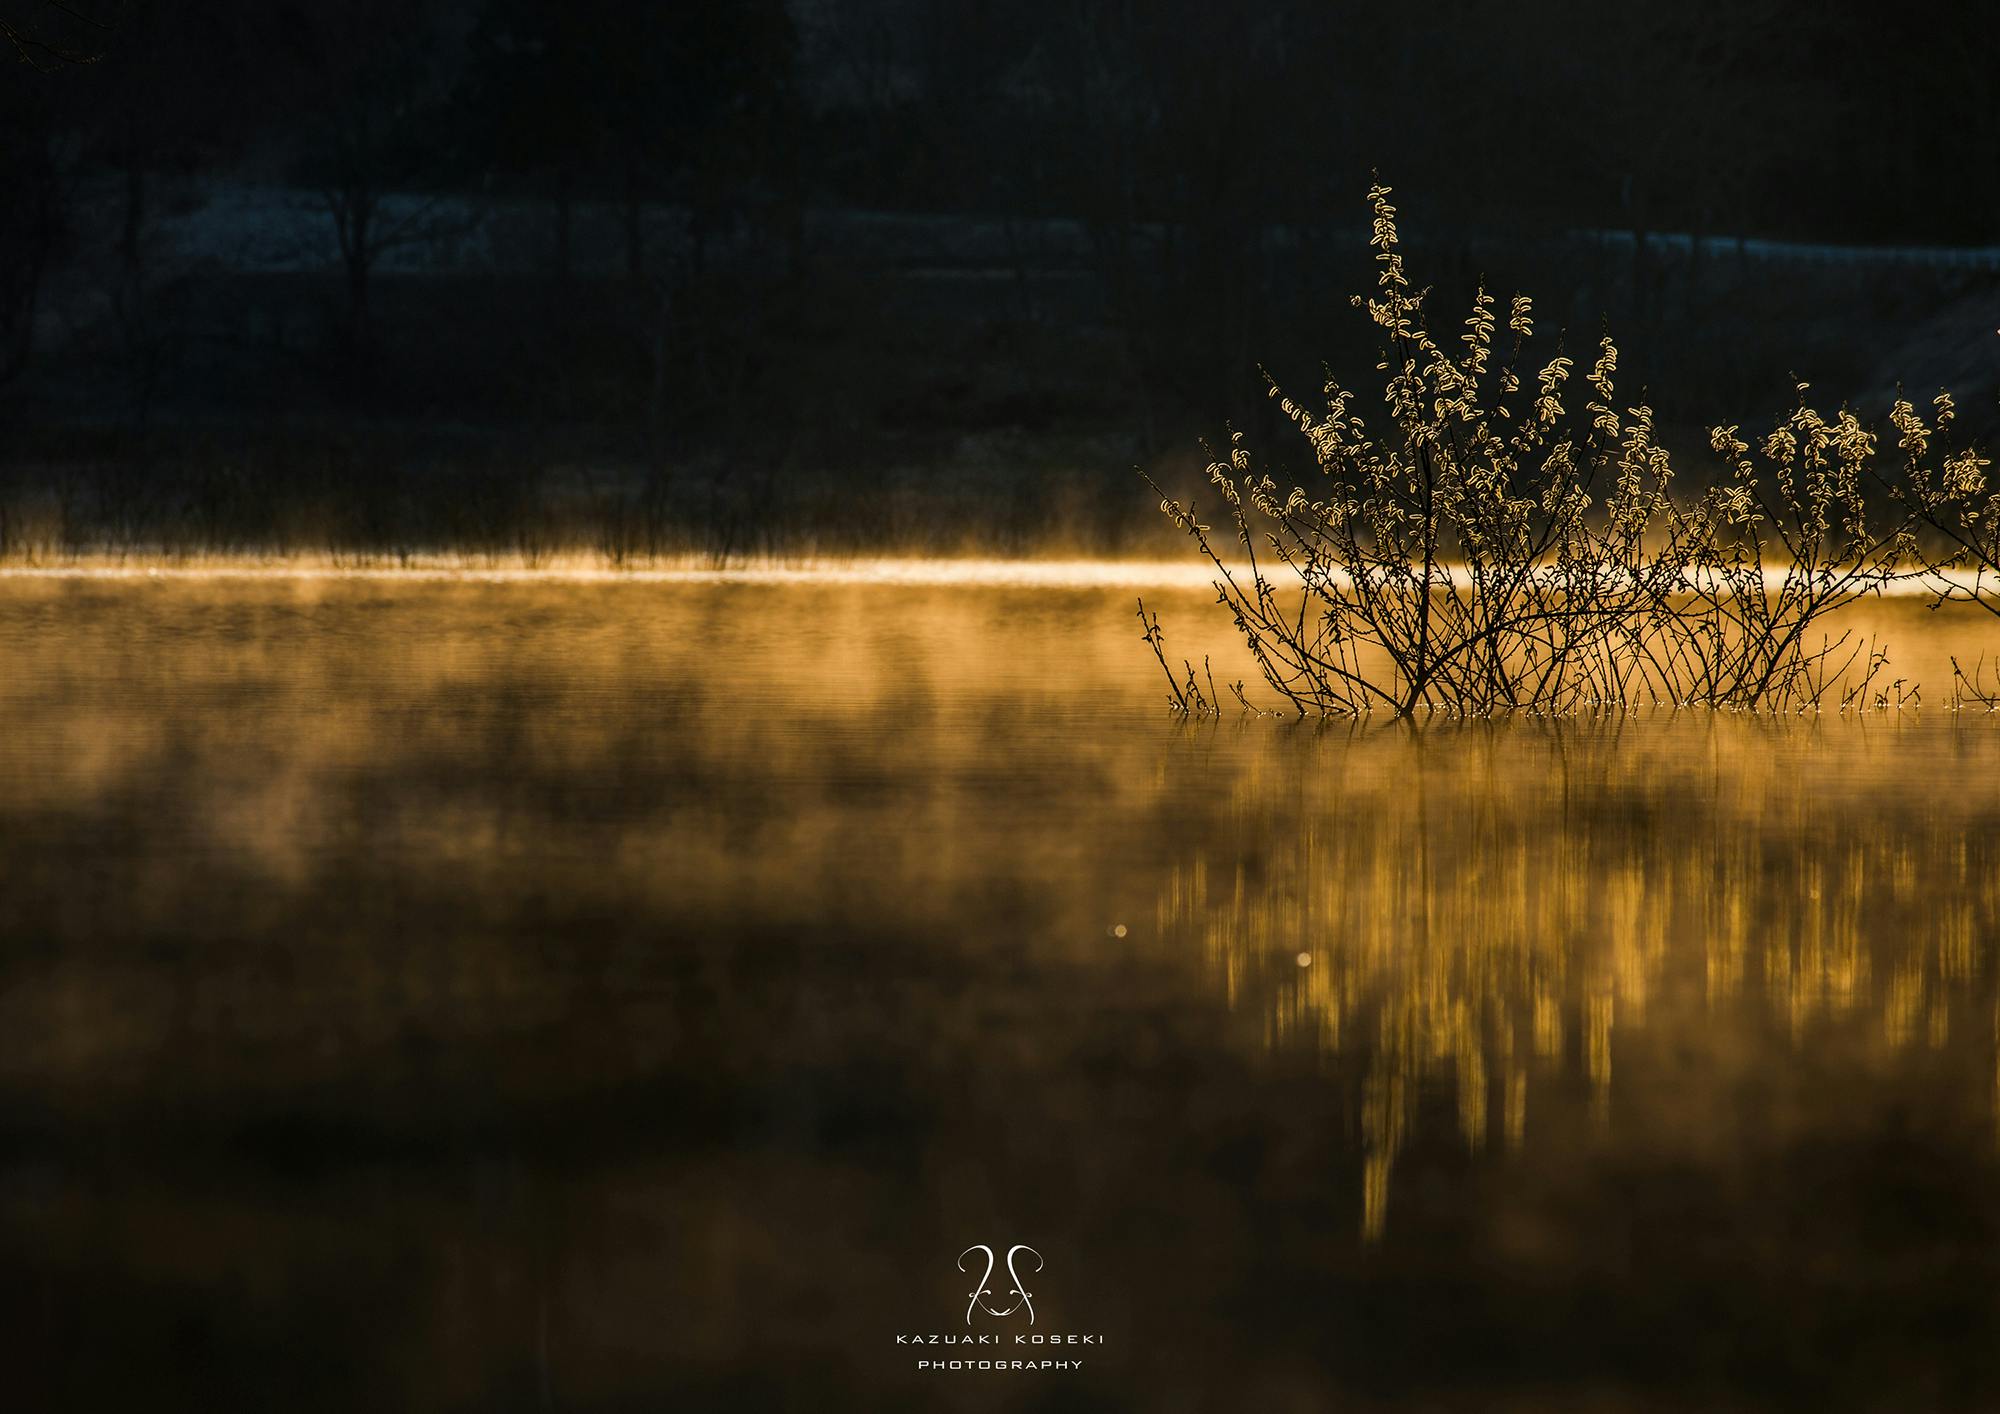 山形にある1ヶ月限定の幻想的な「白川湖の水没林」の写真集を冬青社